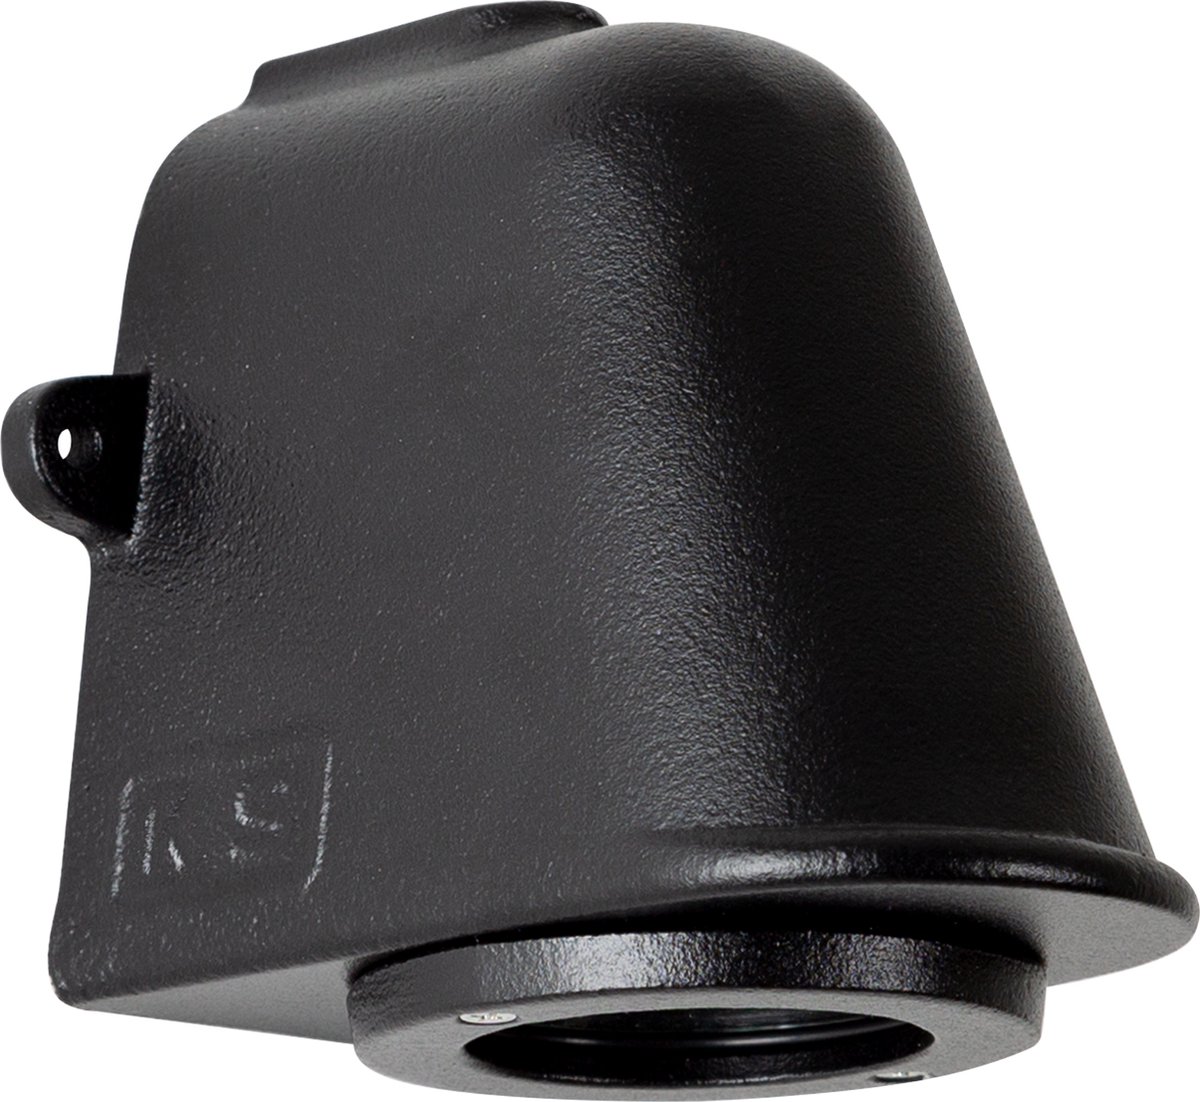 KS Verlichting - Offshore Zwart - muurlamp - buitenlamp - inclusief GU10 lichtbron voorzien van schemersensor - nautisch en industriële wandlamp